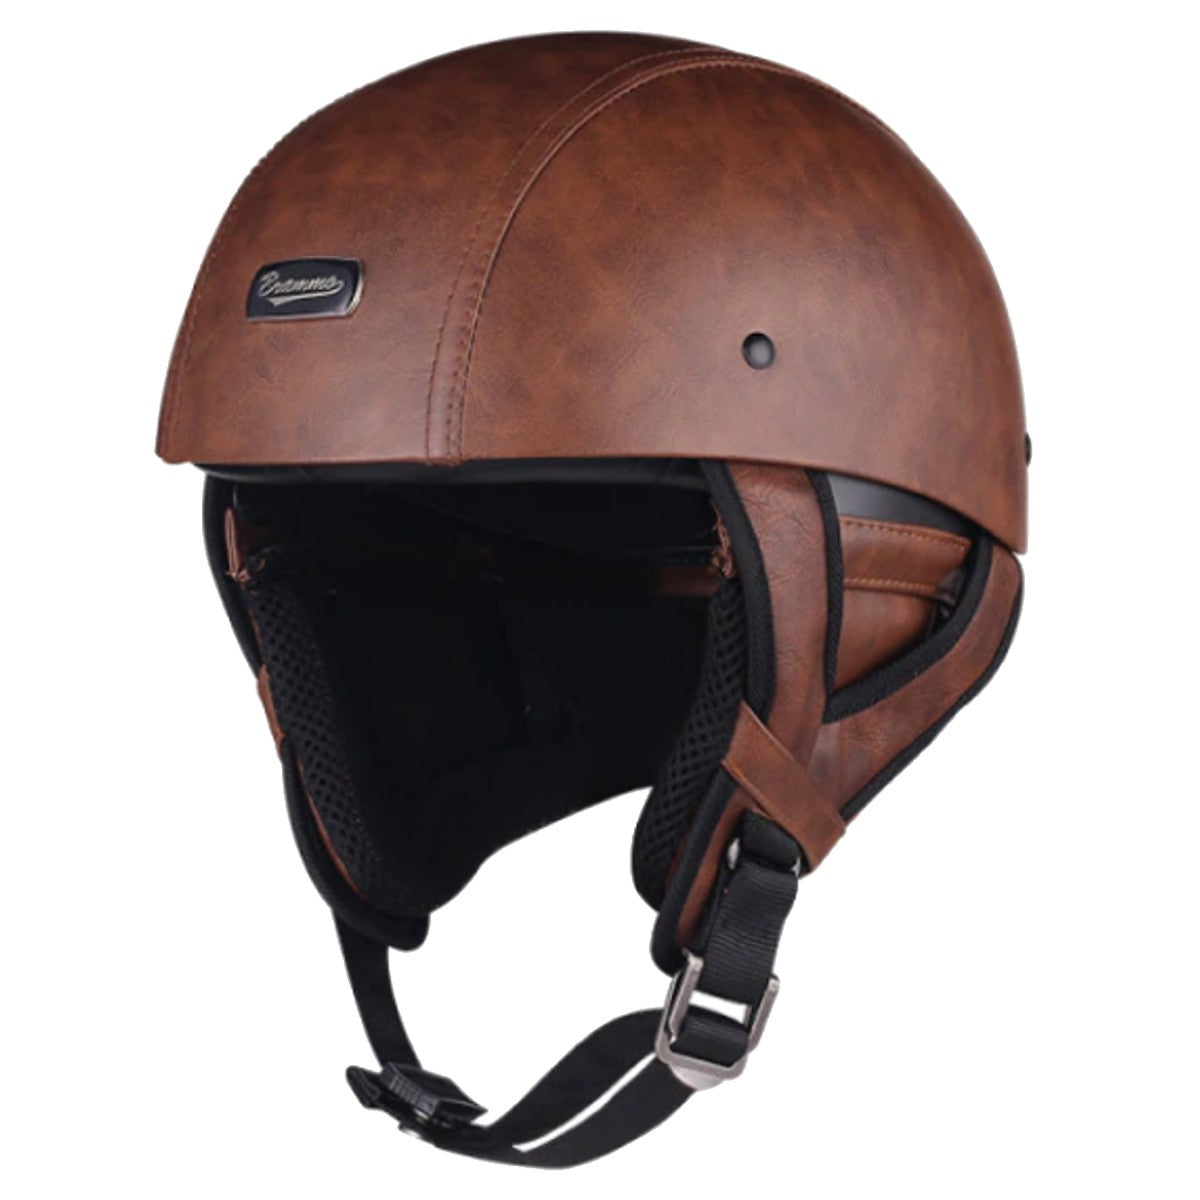 Nazi Brown Leather German Motorcycle Helmet